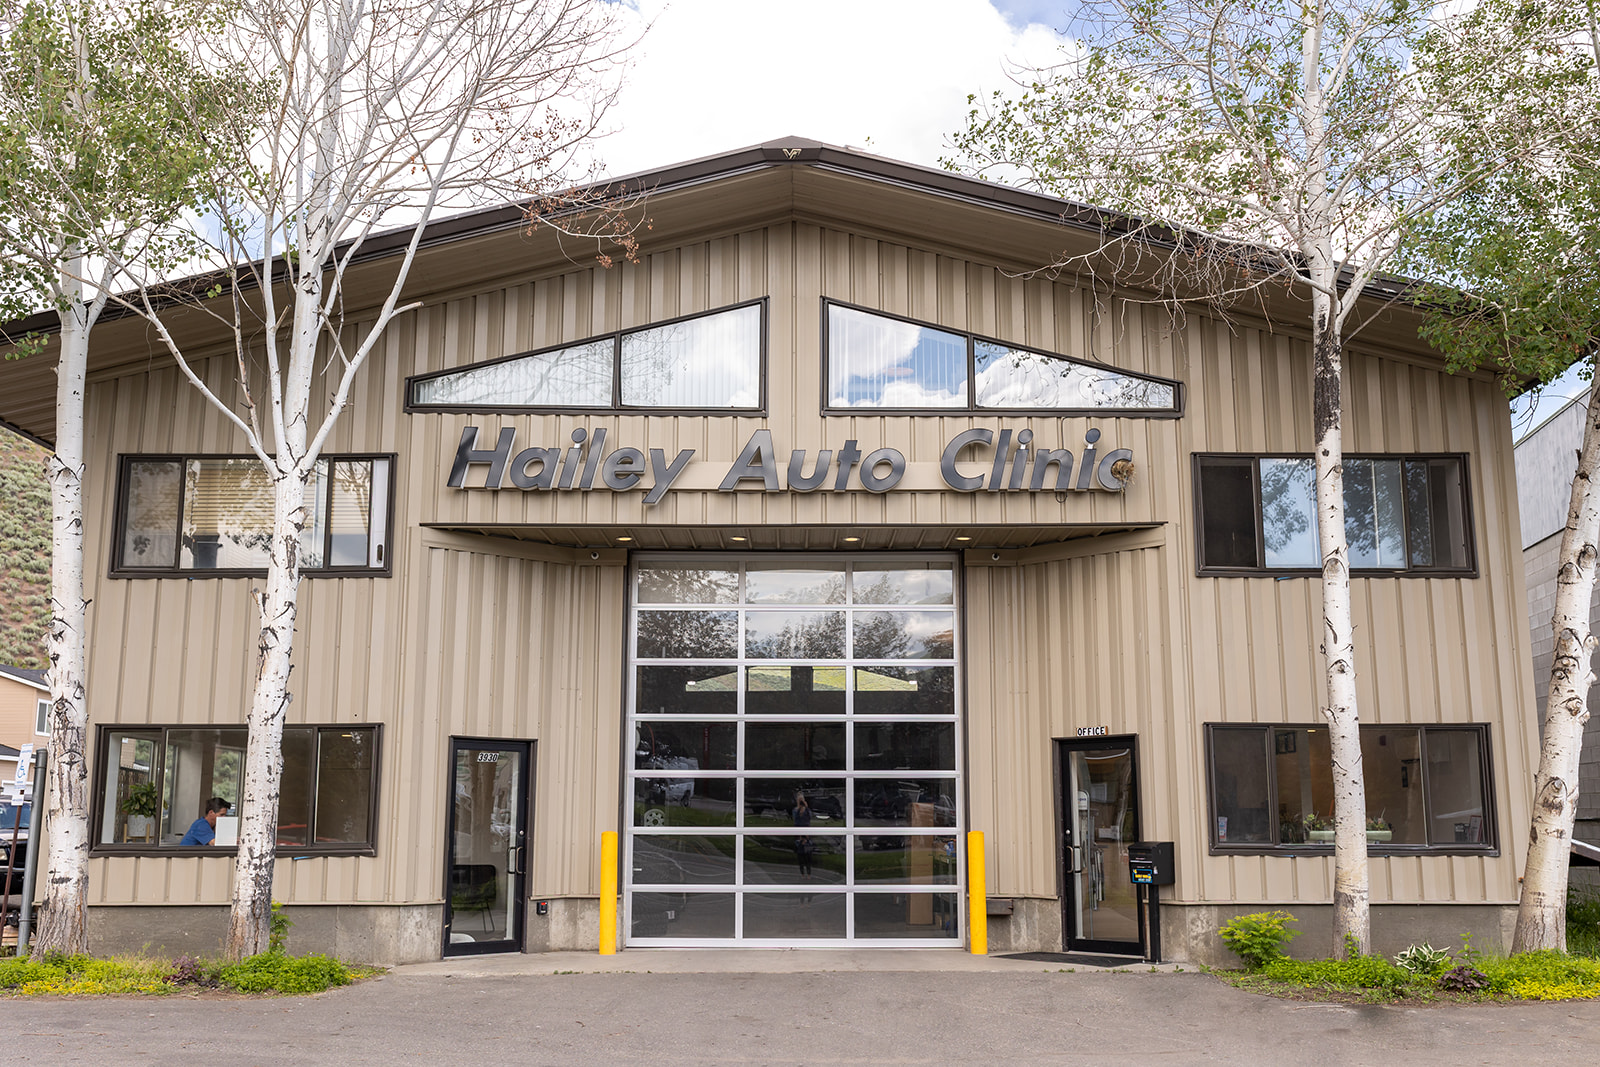 Hailey Auto Clinic